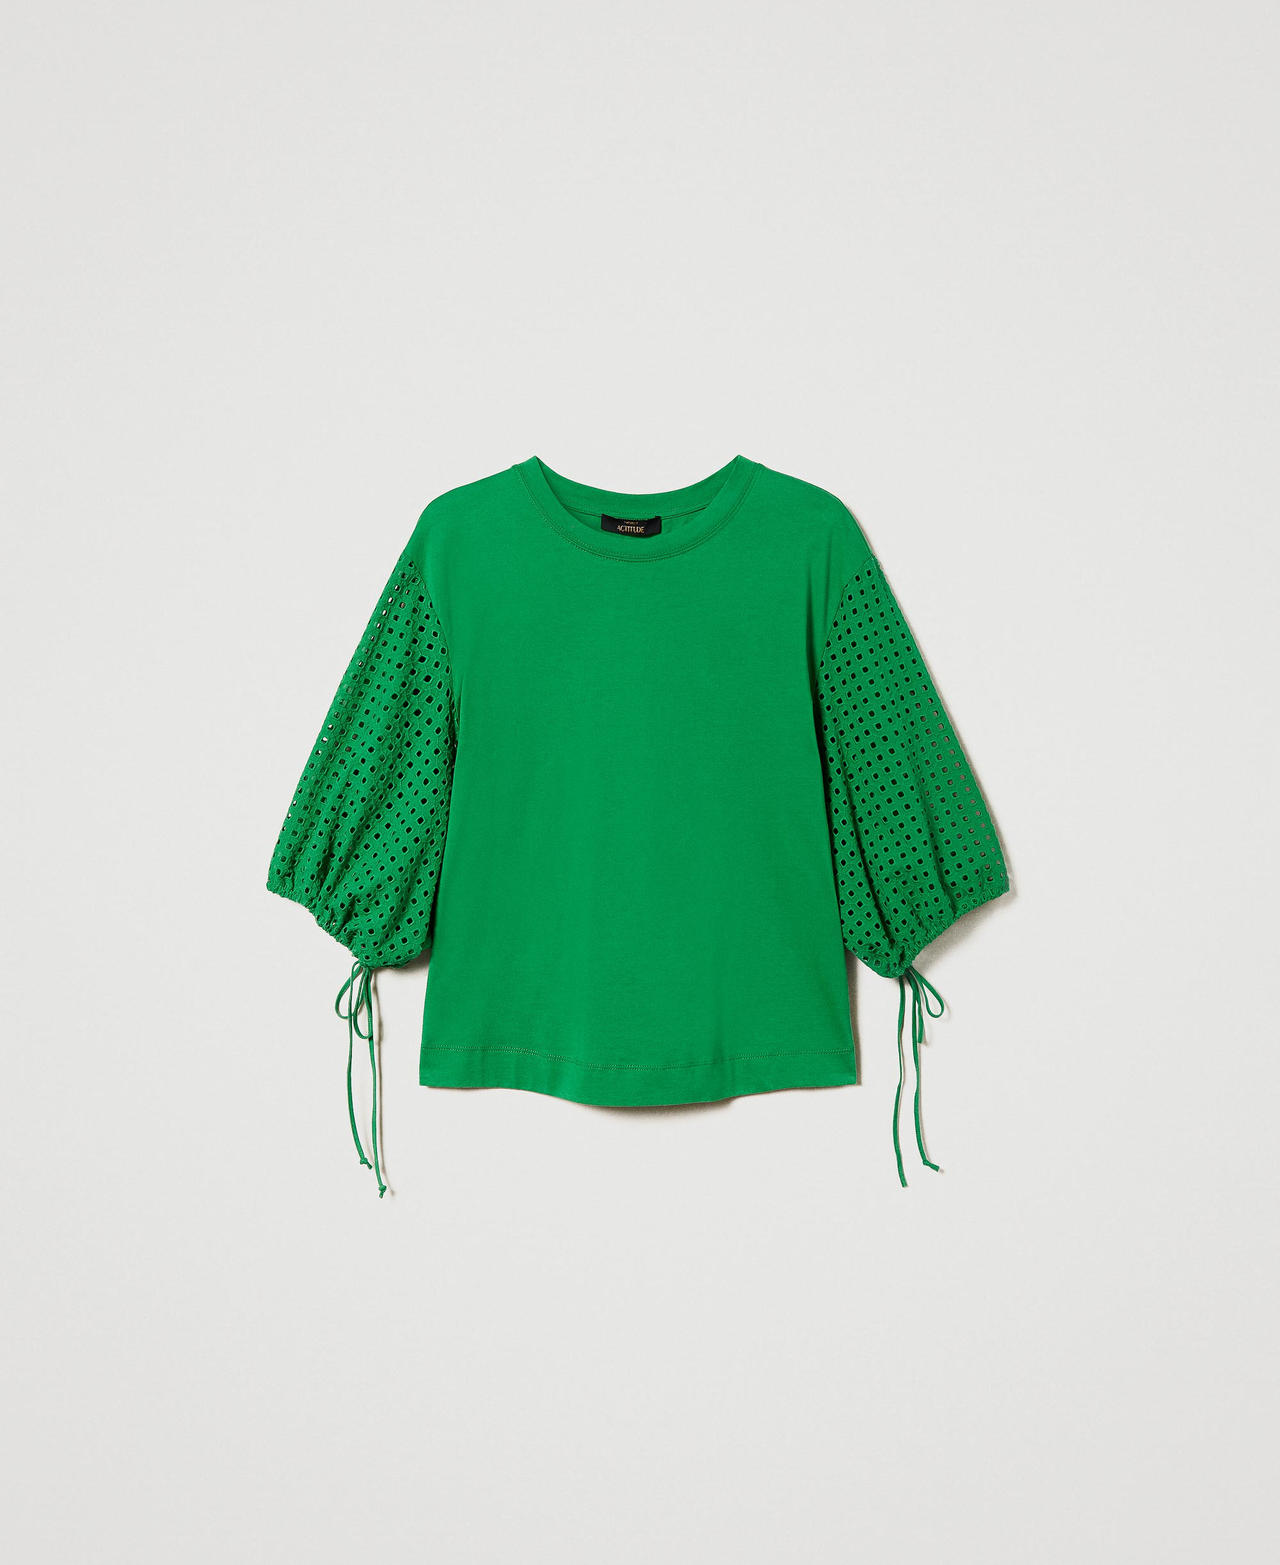 T-shirt avec manches en broderie anglaise Vert « Fern Green » Femme 241AT2078-0S